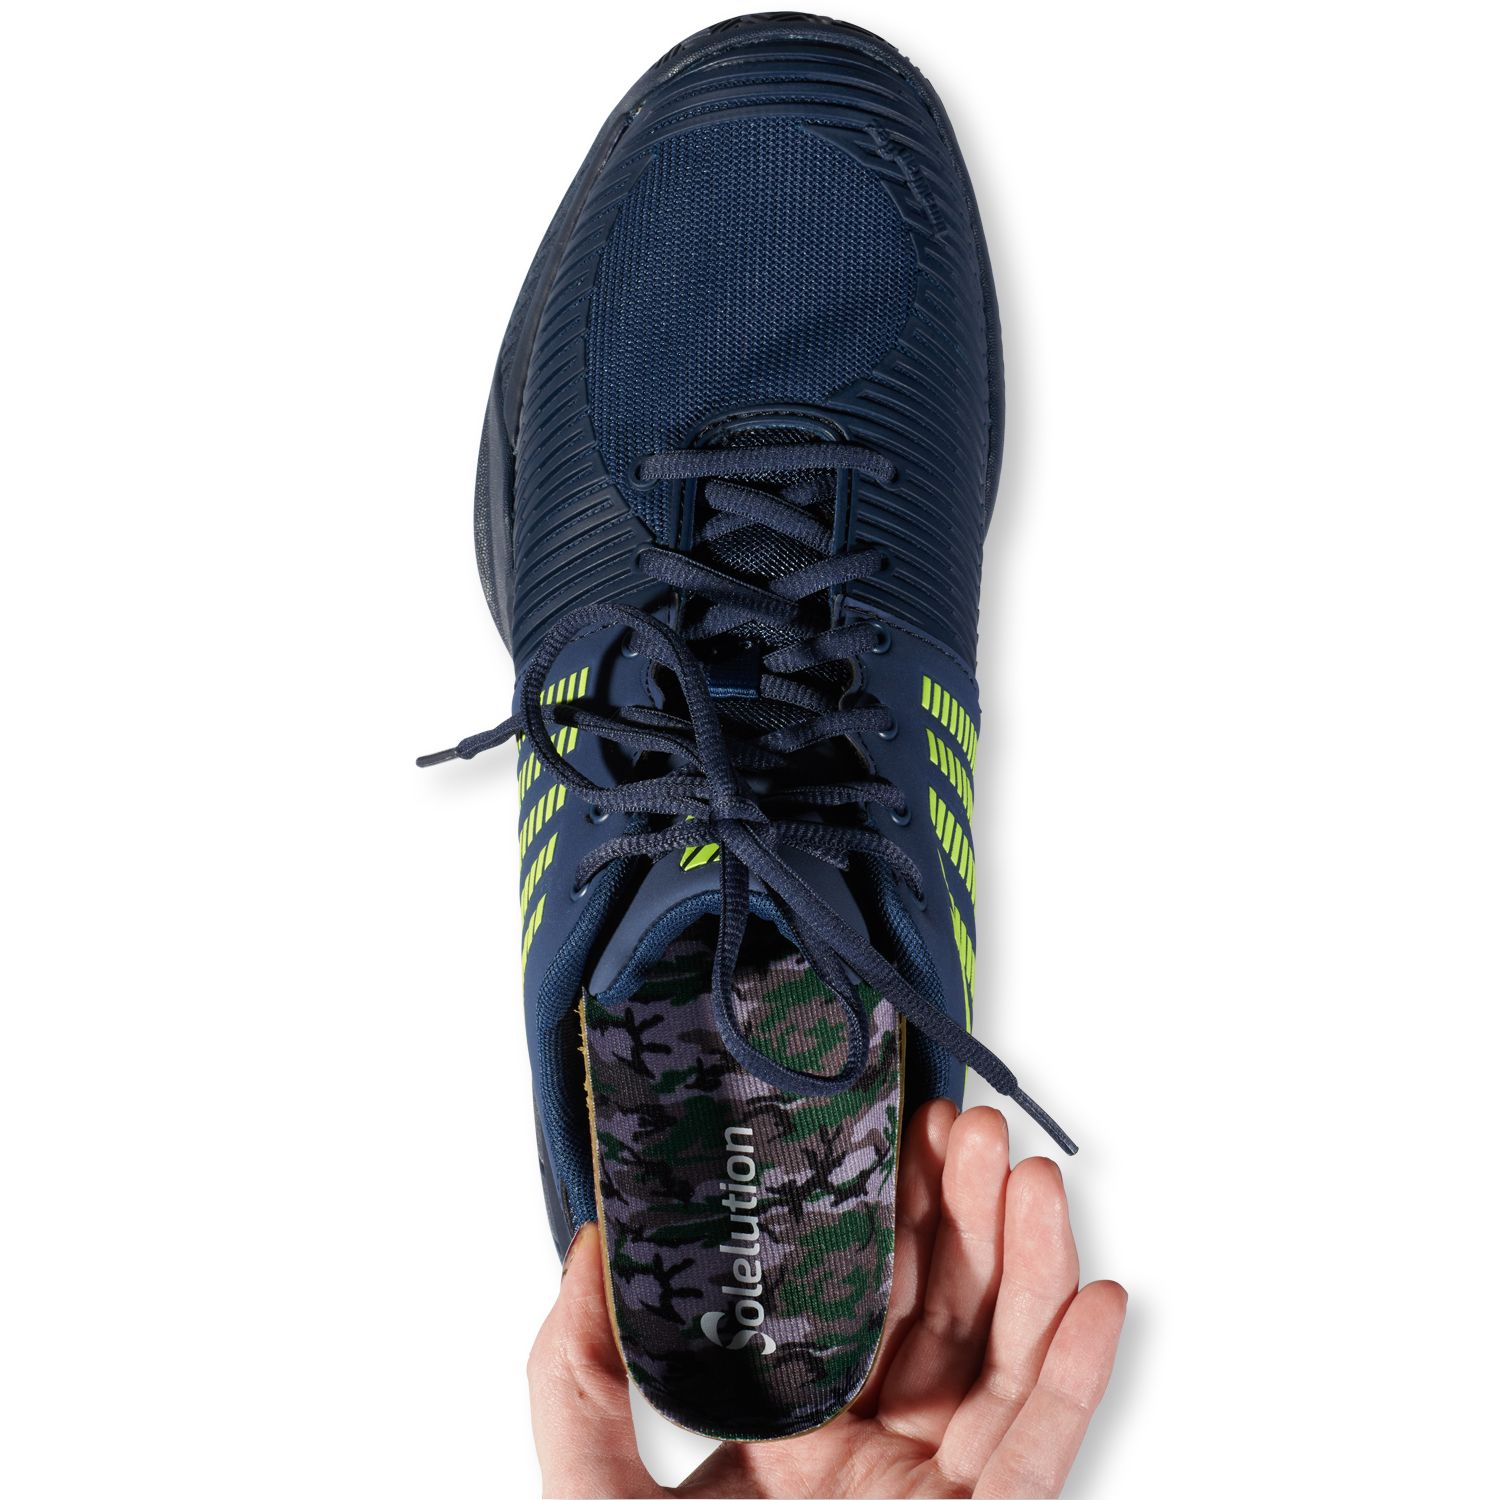 Solelution sport outdoor insoles shoe